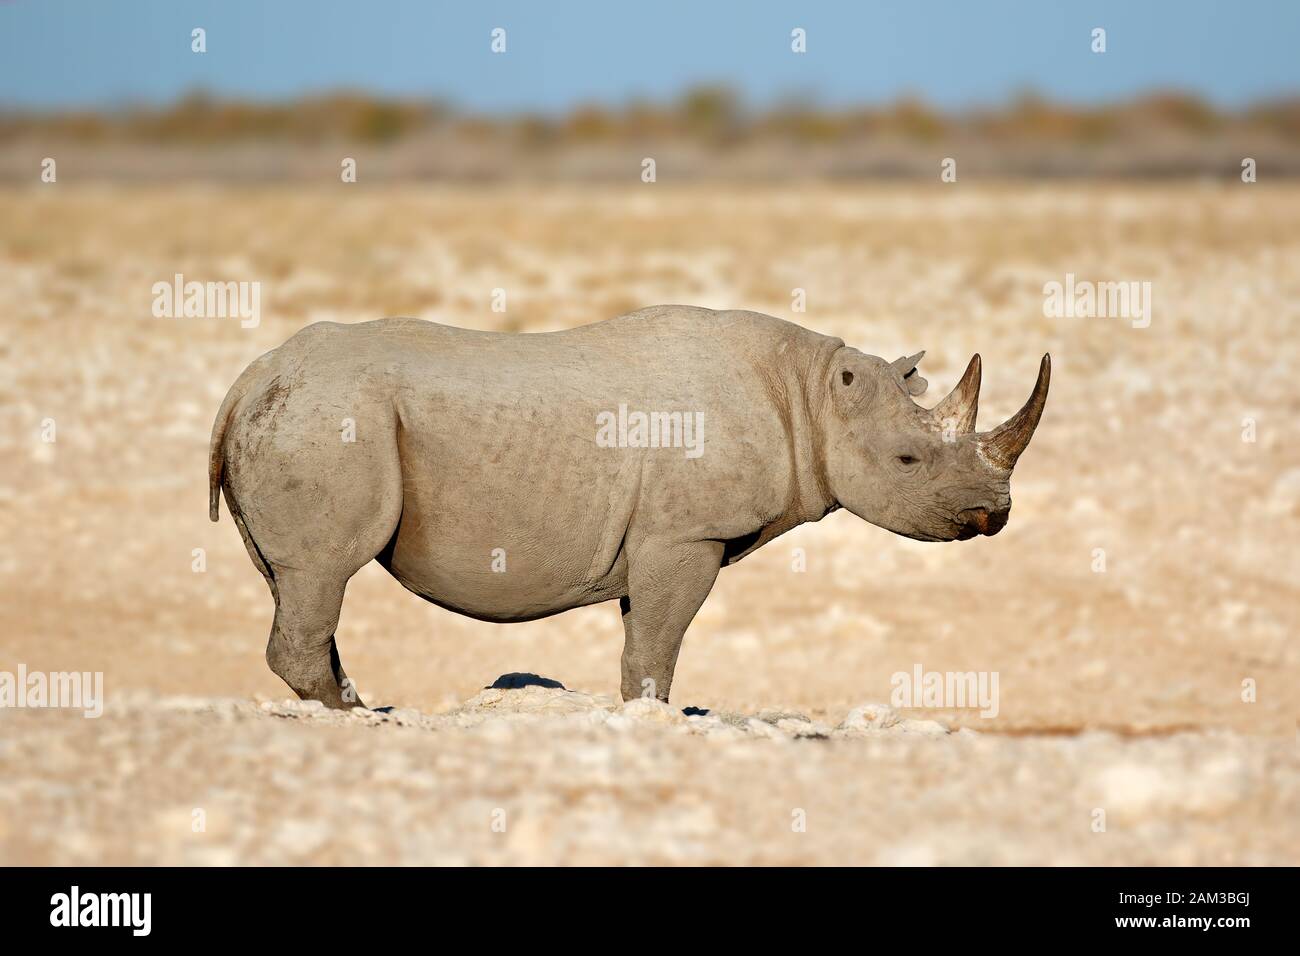 A black rhinoceros (Diceros bicornis) in the arid landscape of Etosha National Park, Namibia Stock Photo